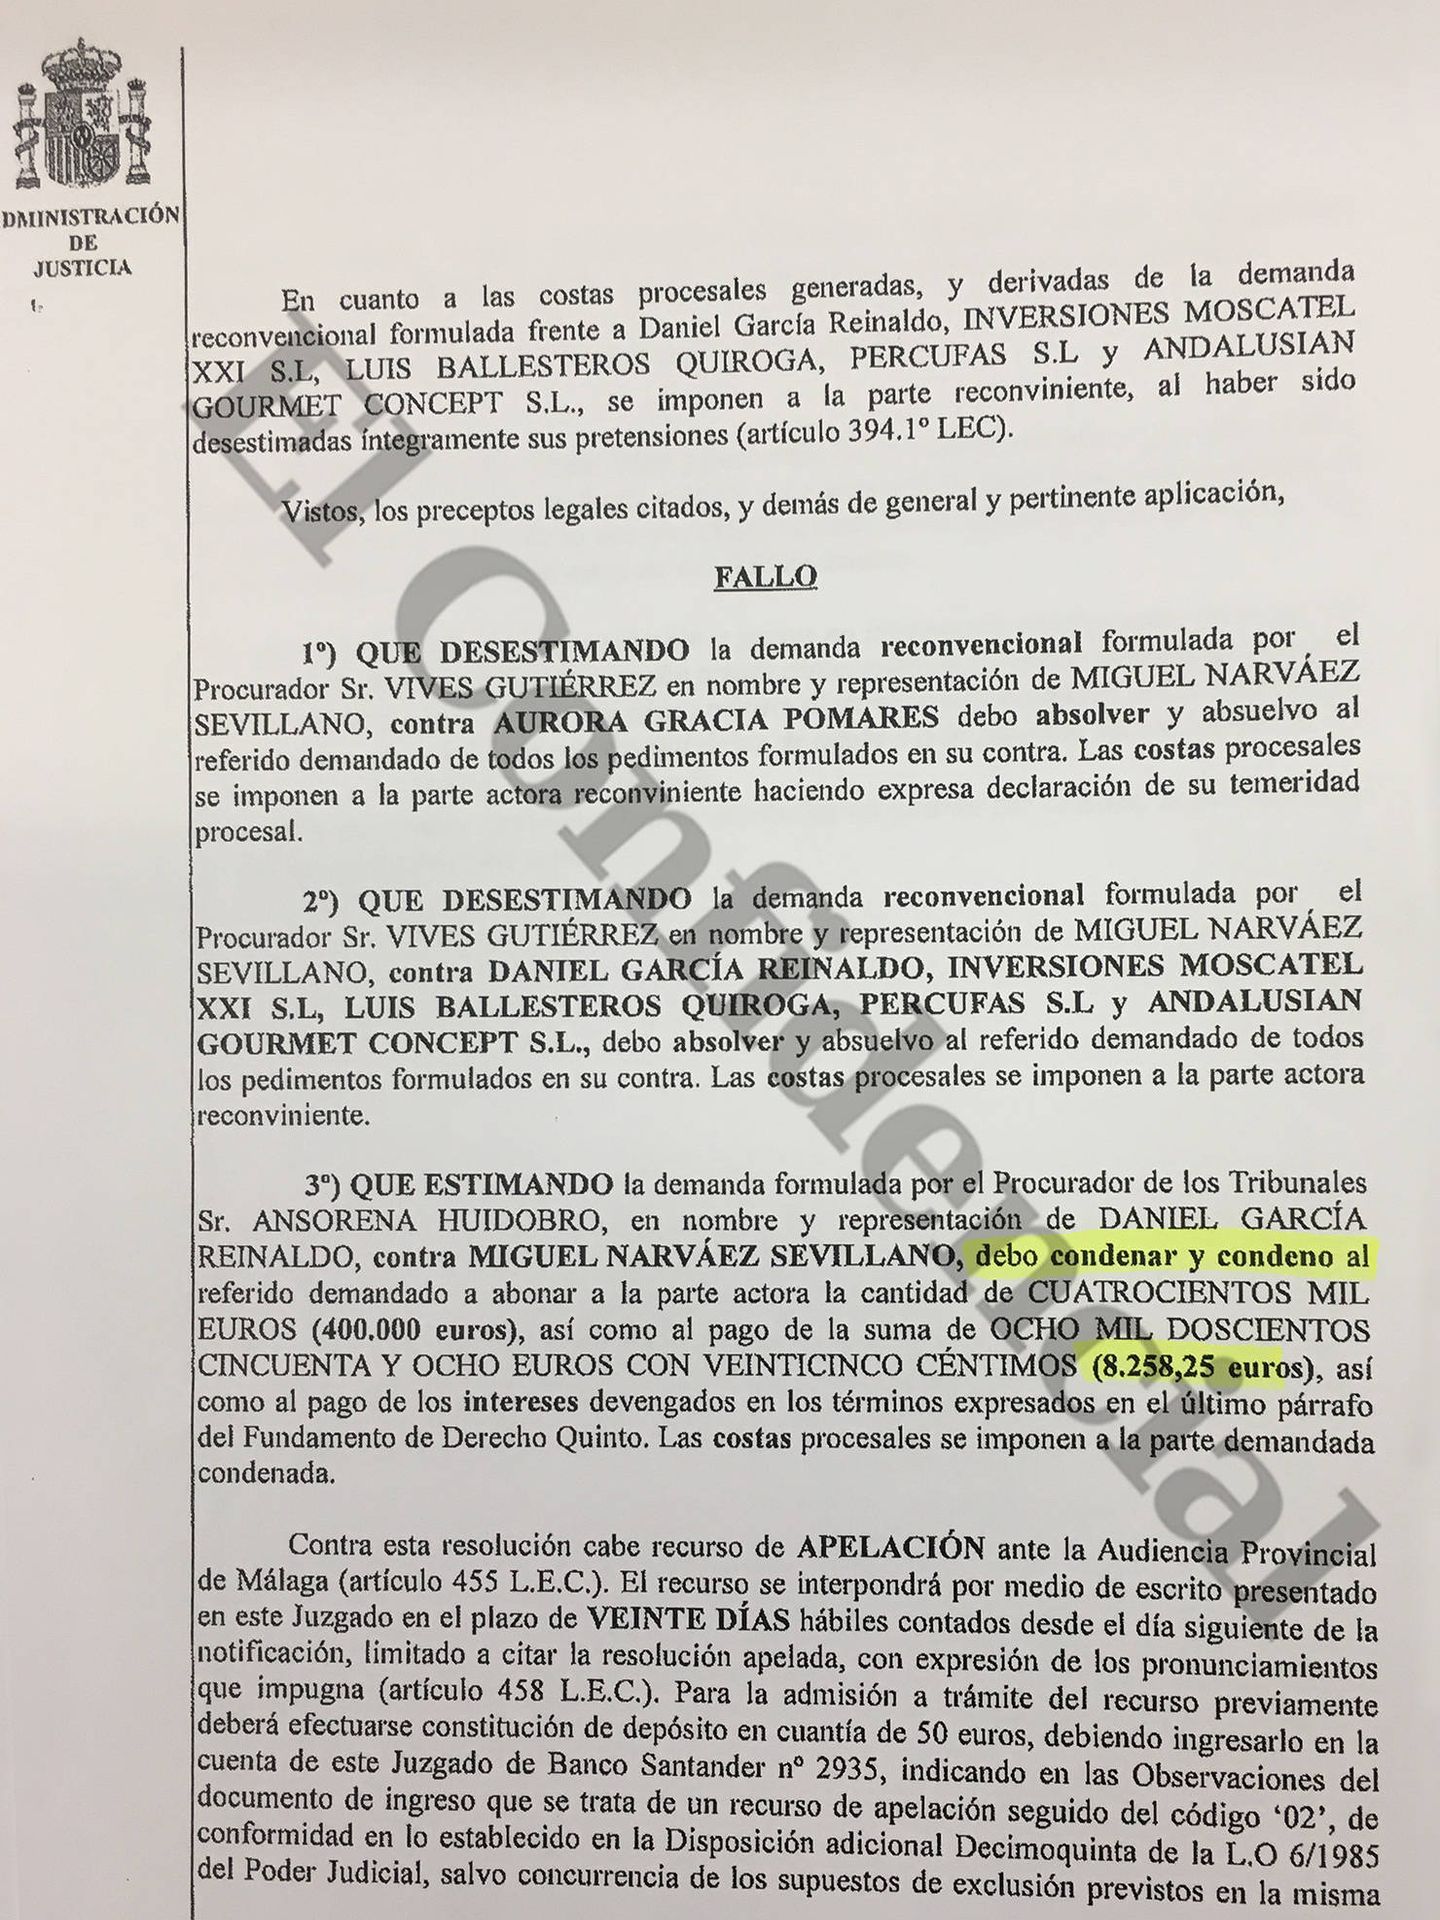 Fragmento del fallo judicial contra Miguel Narváez y a favor de Dani García, fechado el 17 de mayo de 2019.